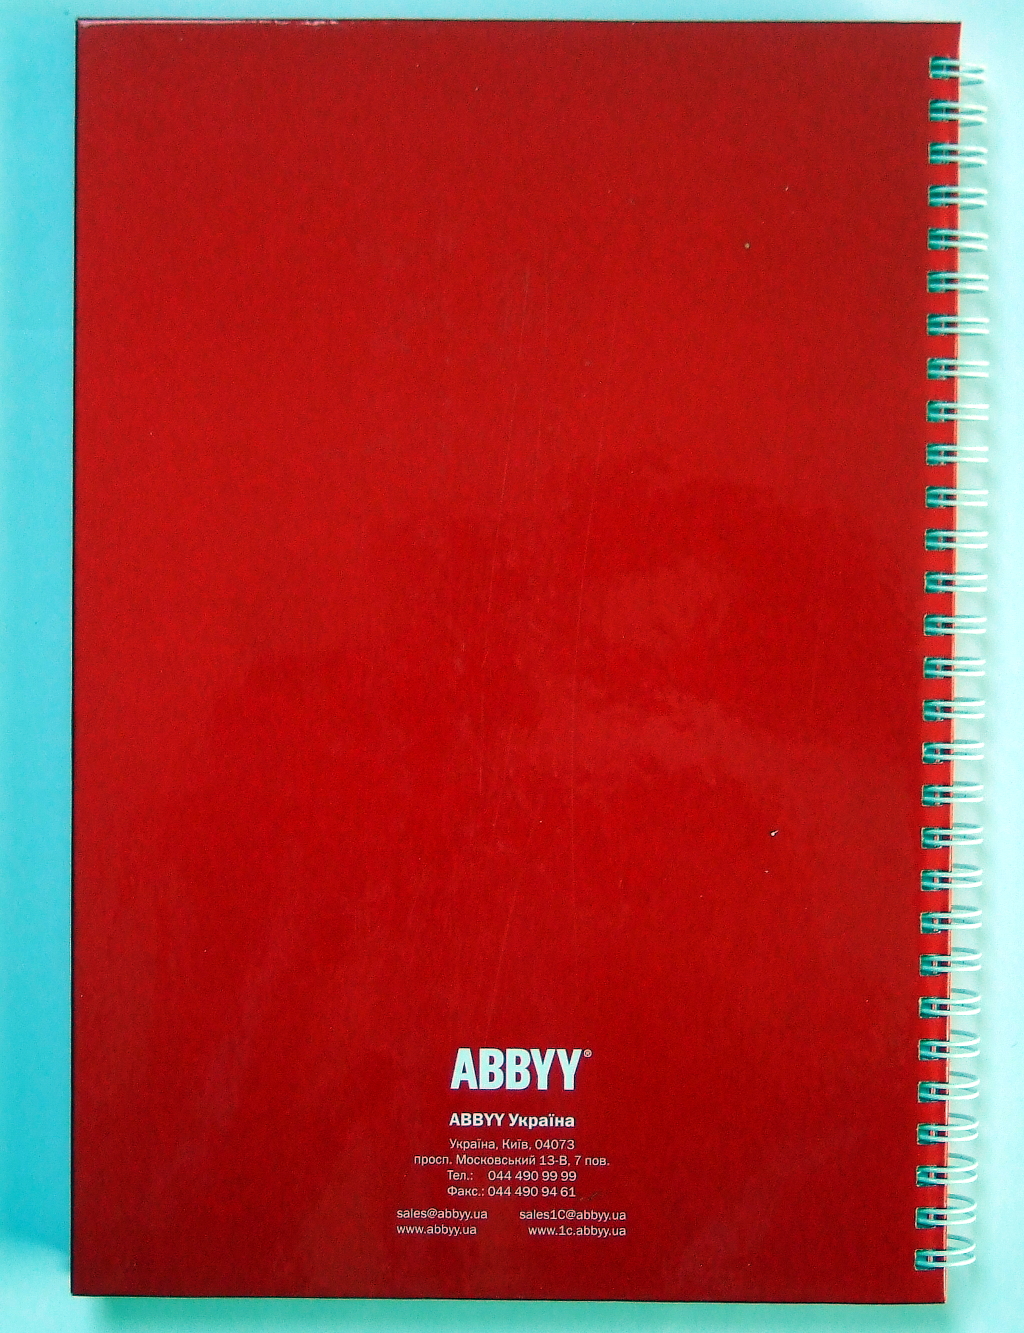 Виготовлення блокнотів «ABBYY». Поліграфія друкарні Макрос, виготовлення блокнотів, специфікація 952994-9